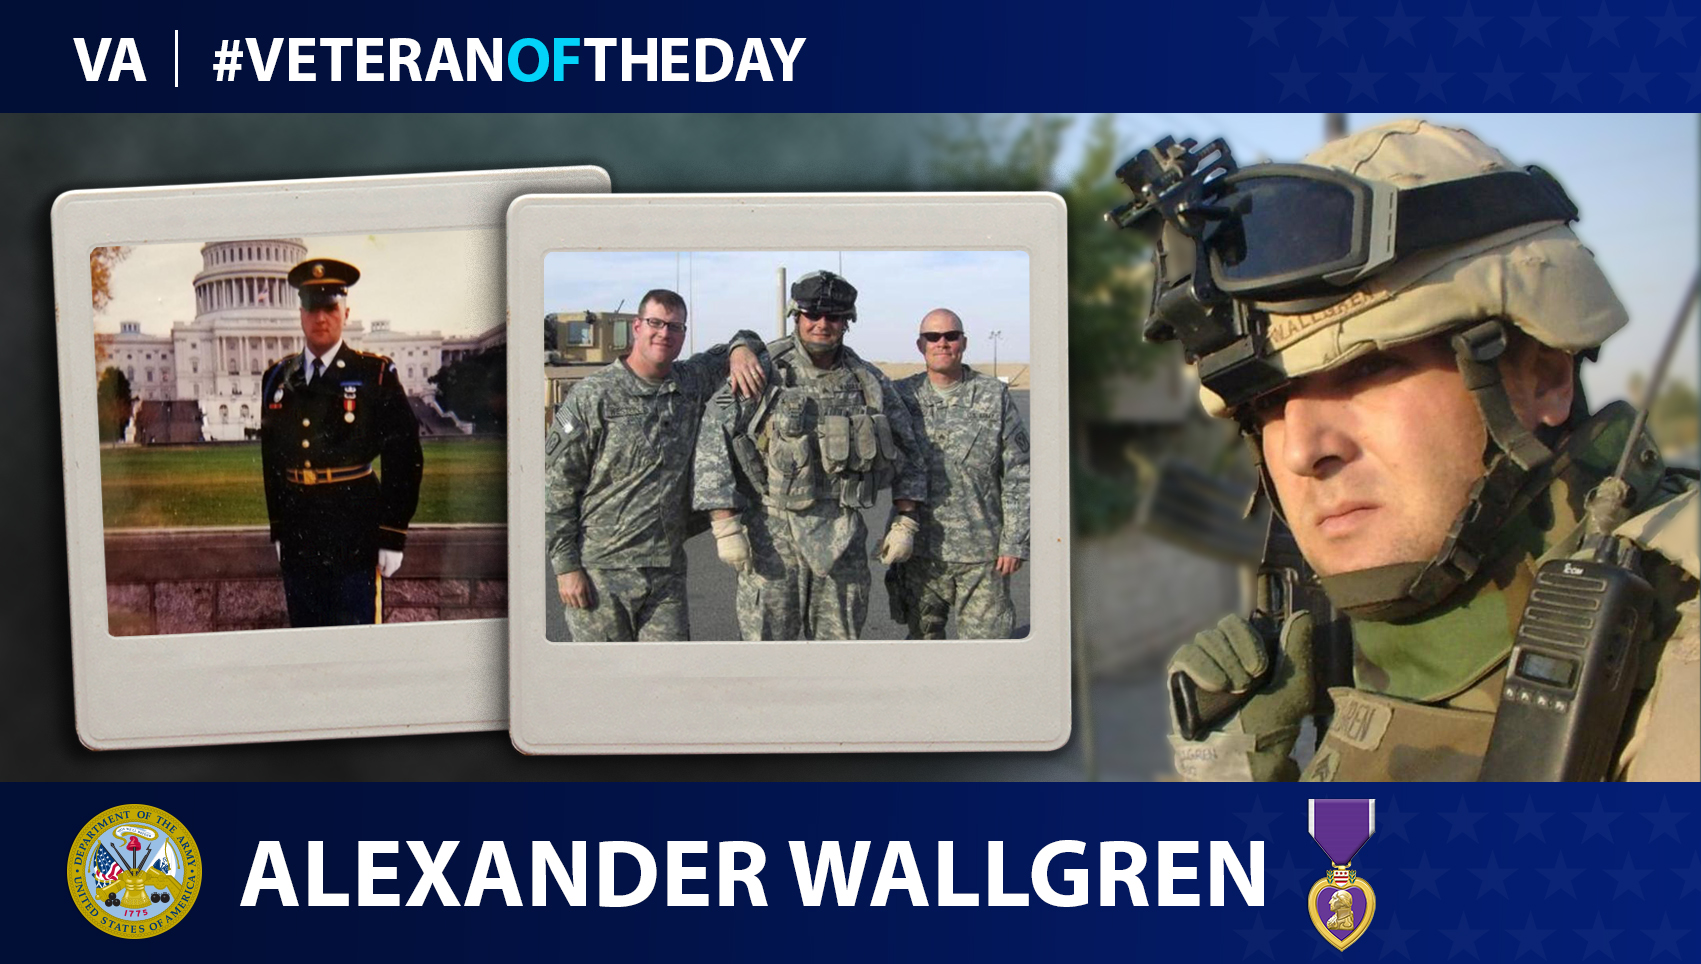 Army Veteran Alexander Wallgren is today’s Veteran of the Day.